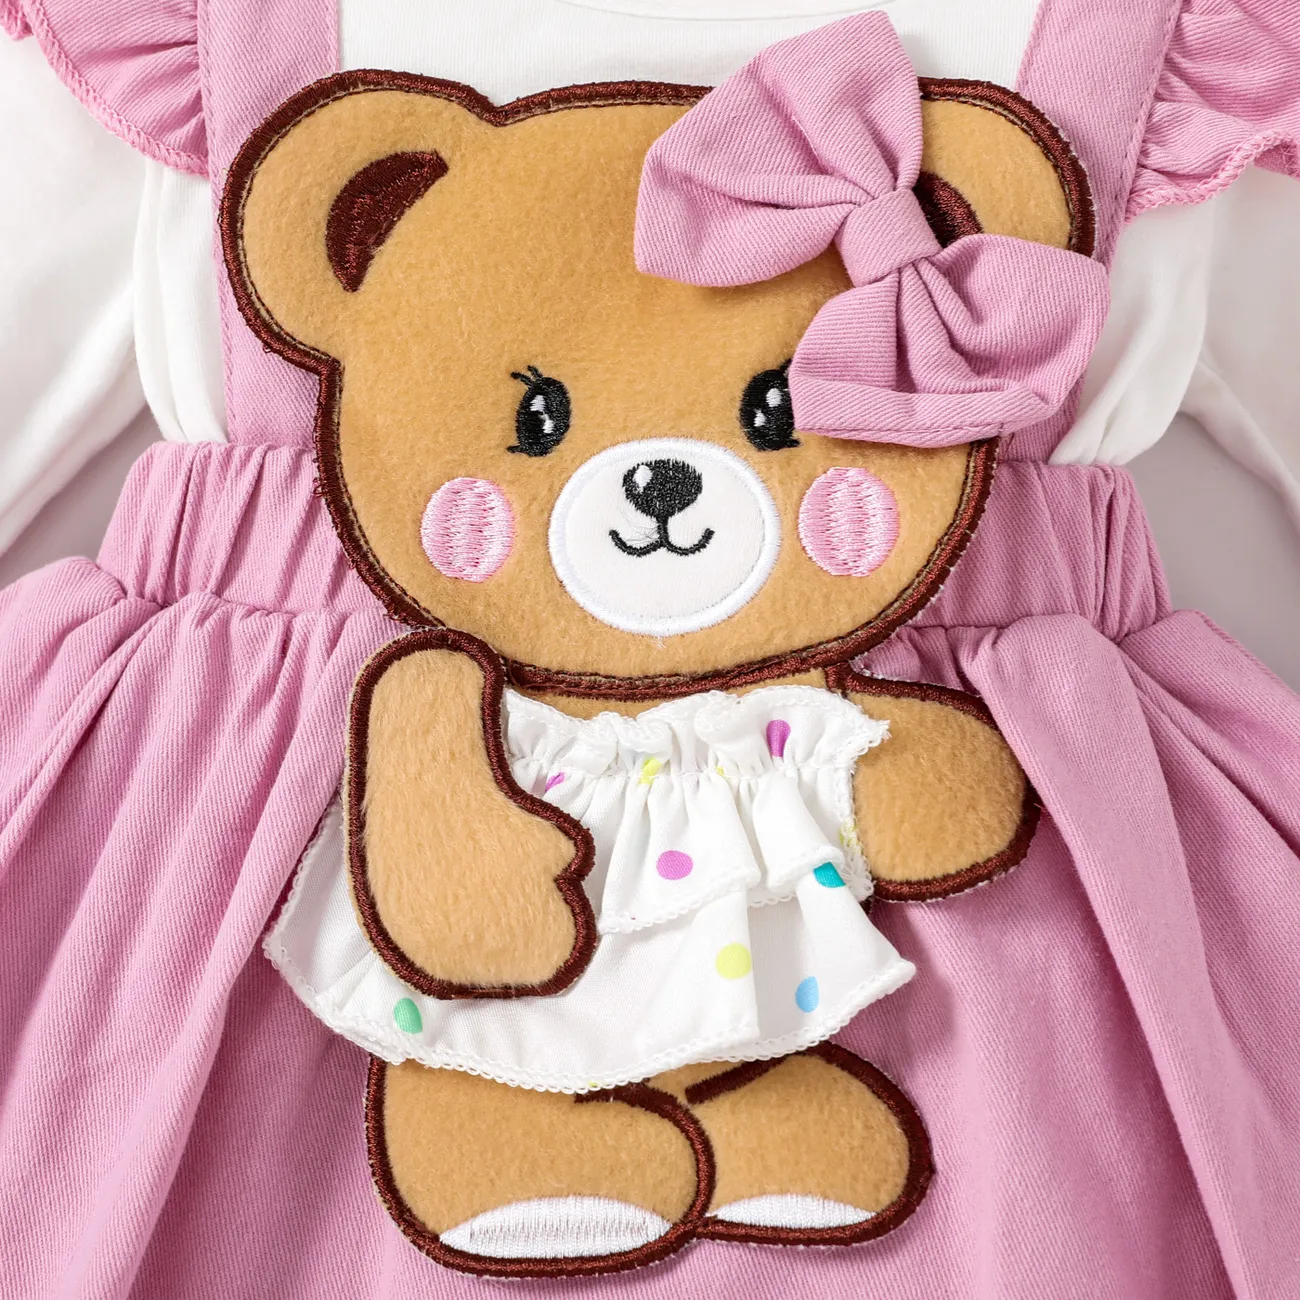 2件 嬰兒 女 立體造型 熊 甜美 長袖 連身衣 粉色 big image 1